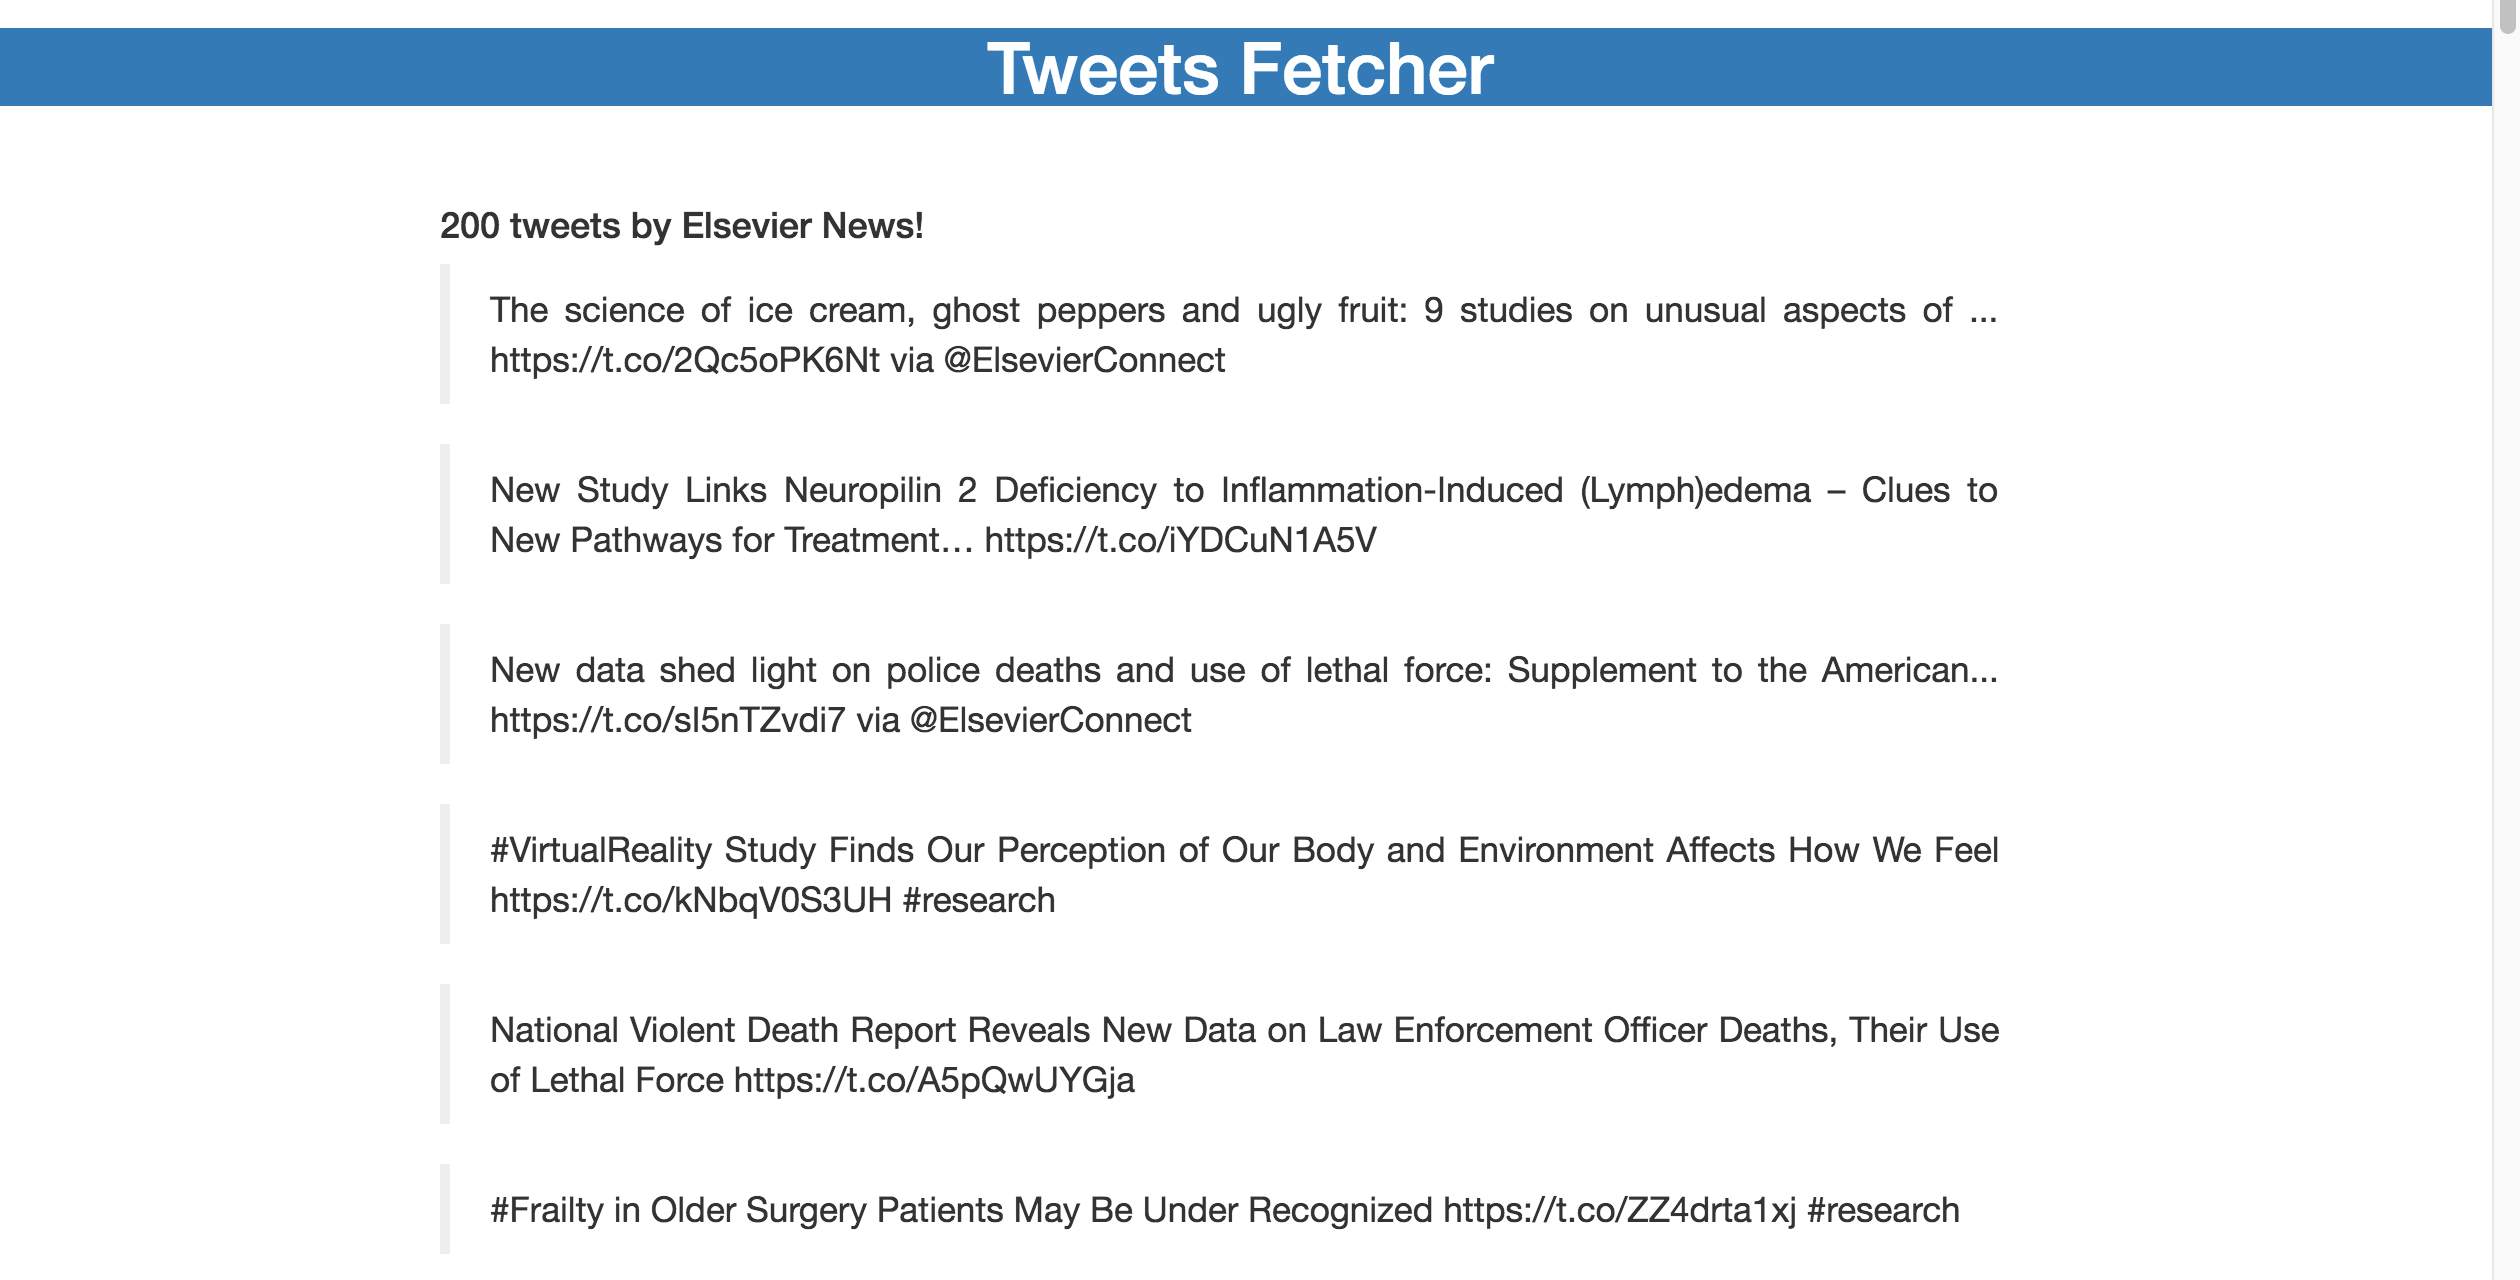 tweets-fetcher-app-screenshot.png